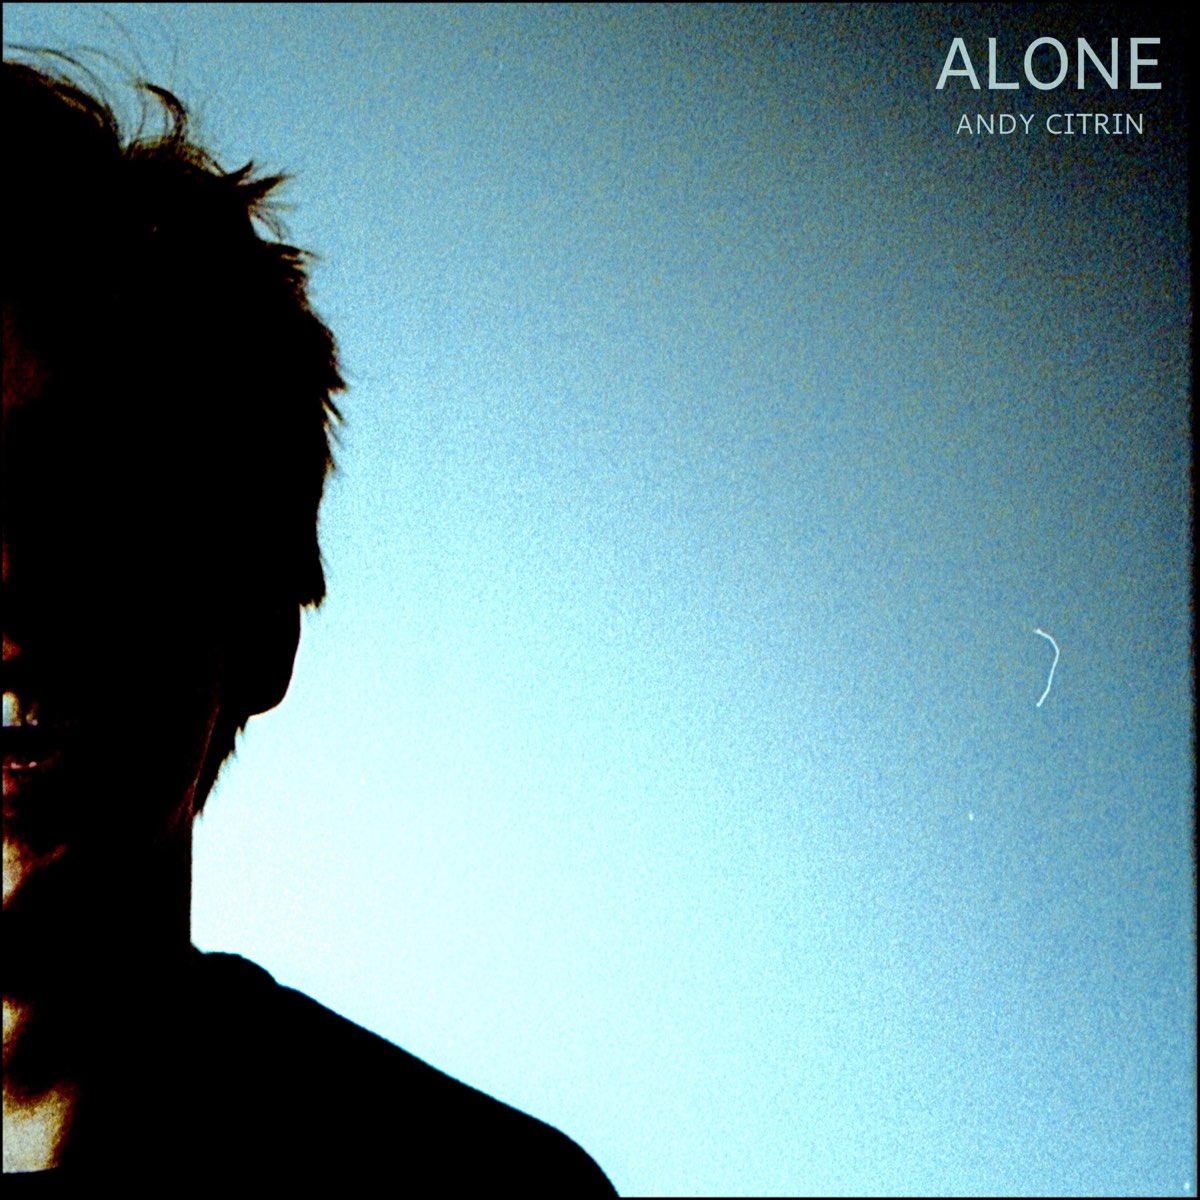 Voice again. Alone песня. Alone песня исполнители. Певец поет песею Lone Lone Alone. Alone down песня.